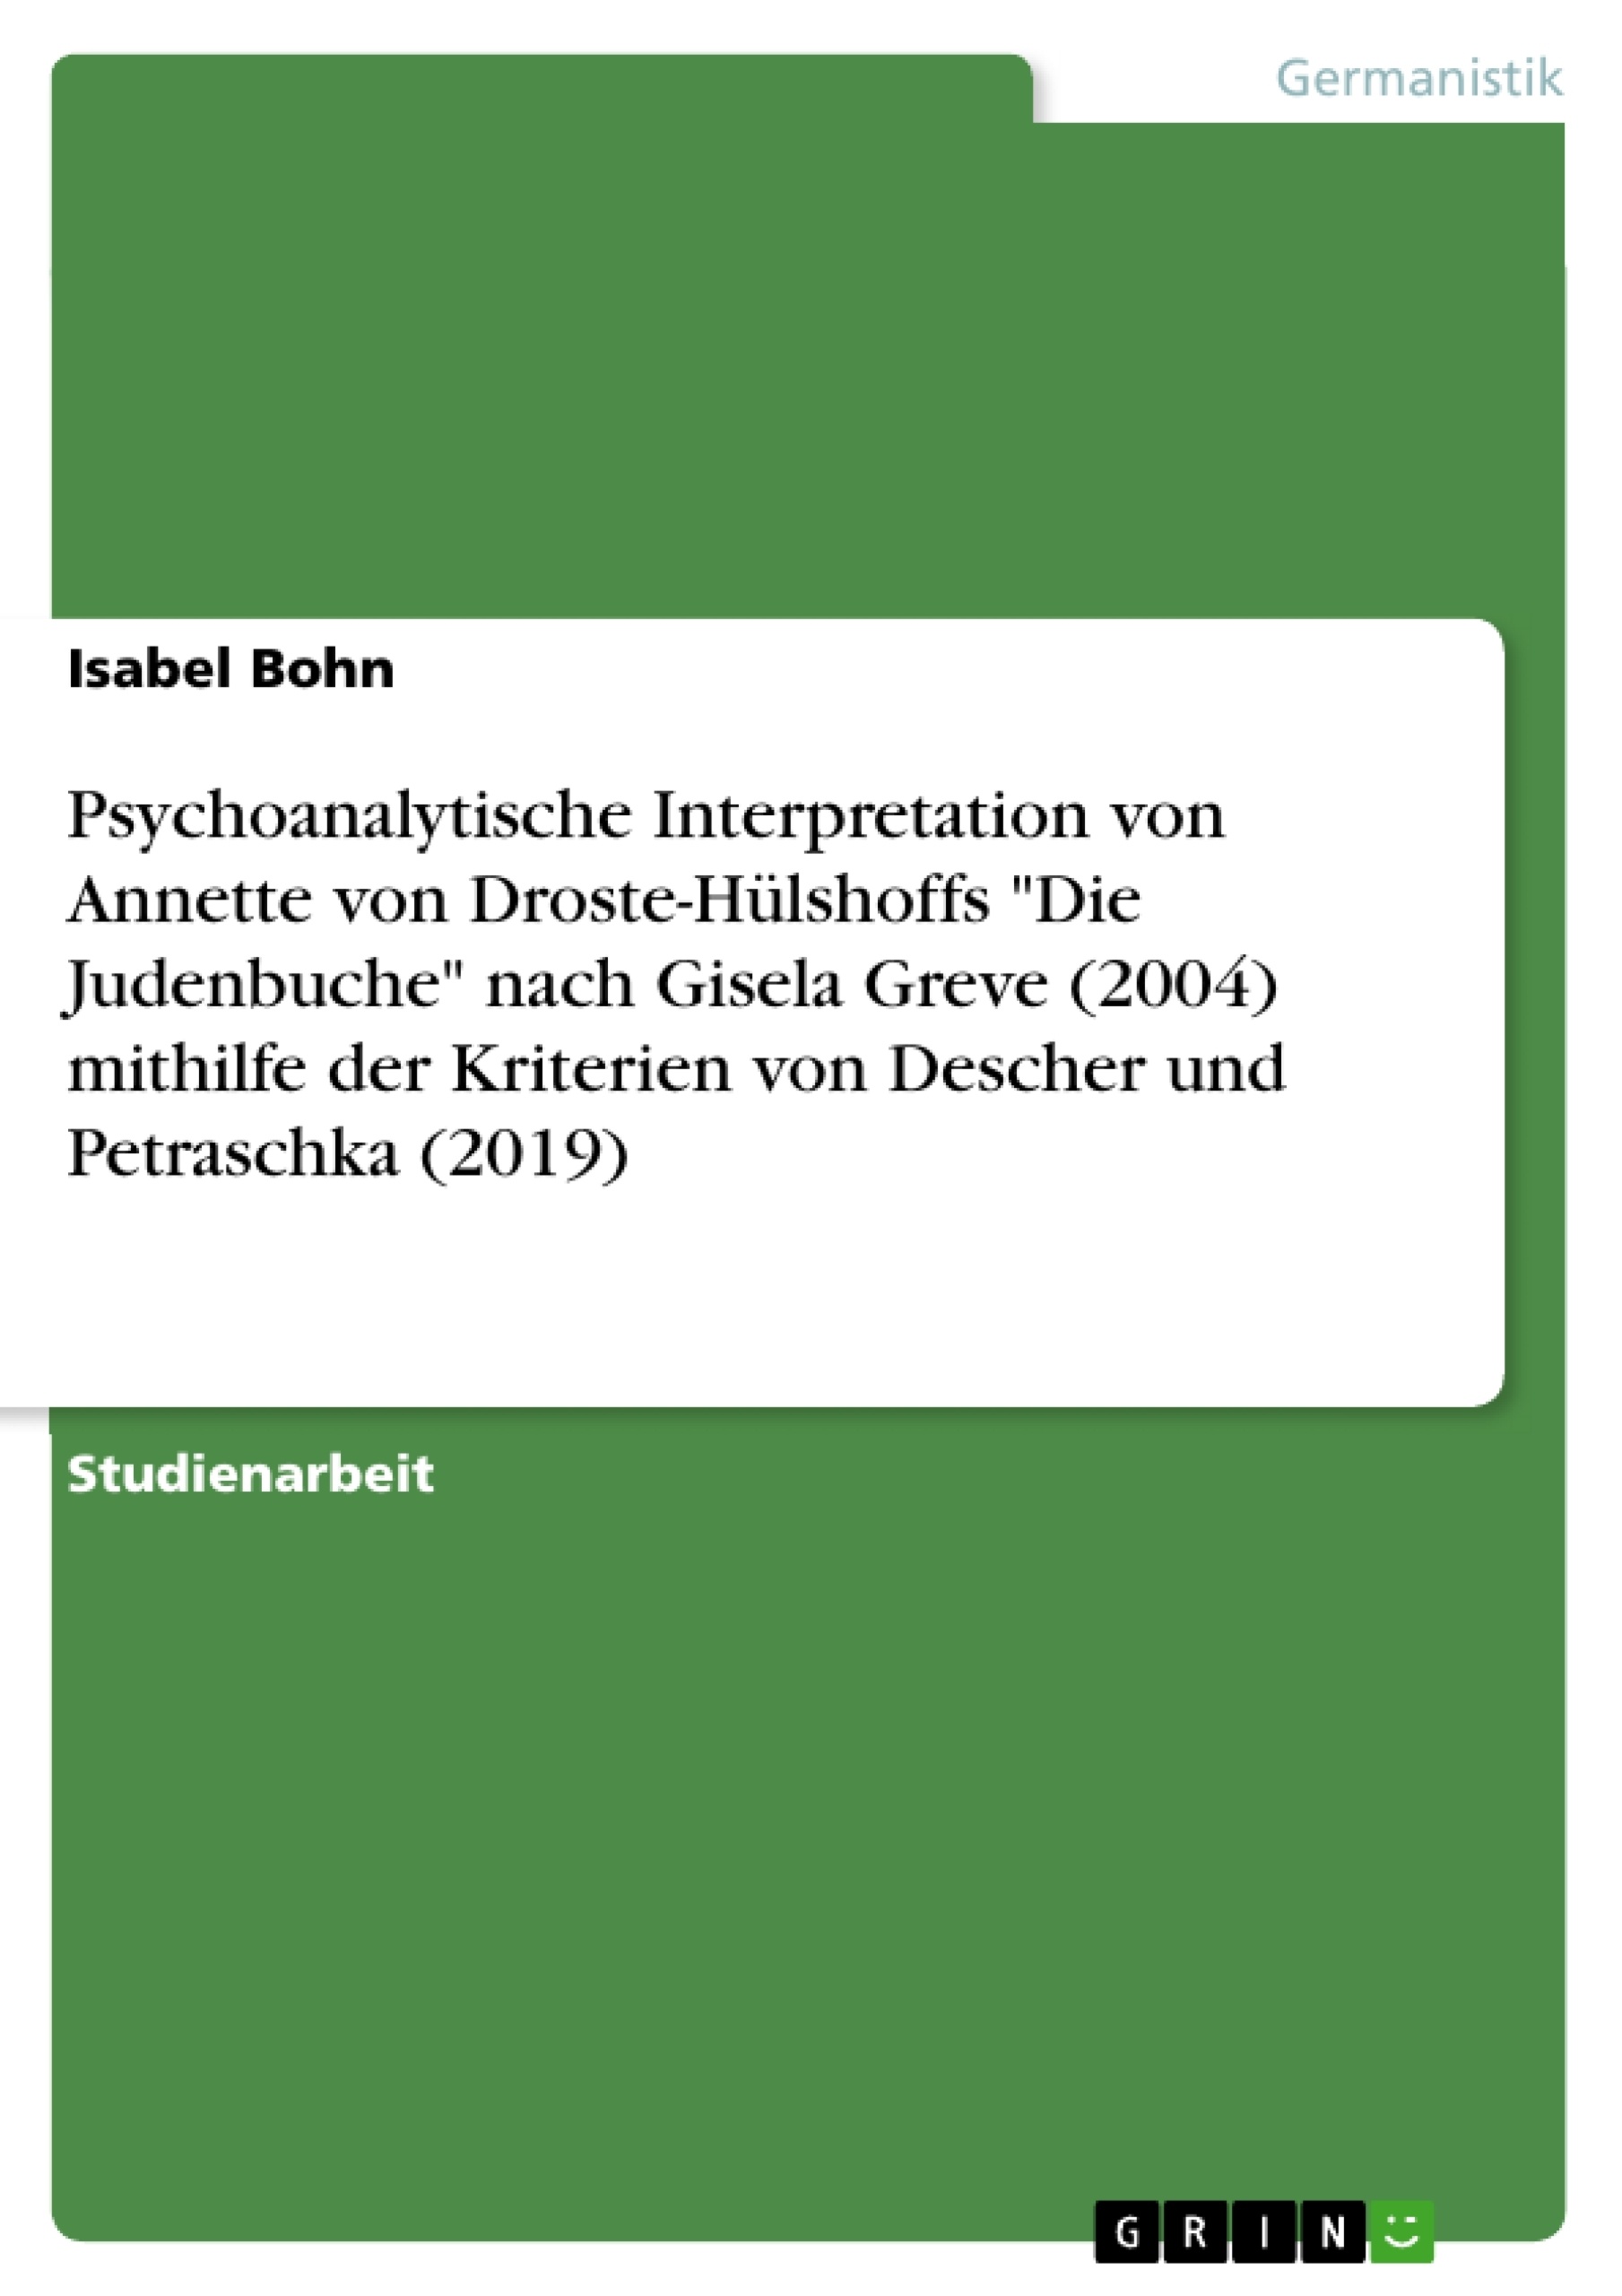 Title: Psychoanalytische Interpretation von Annette von Droste-Hülshoffs "Die Judenbuche" nach Gisela Greve (2004) mithilfe der Kriterien von Descher und Petraschka (2019)